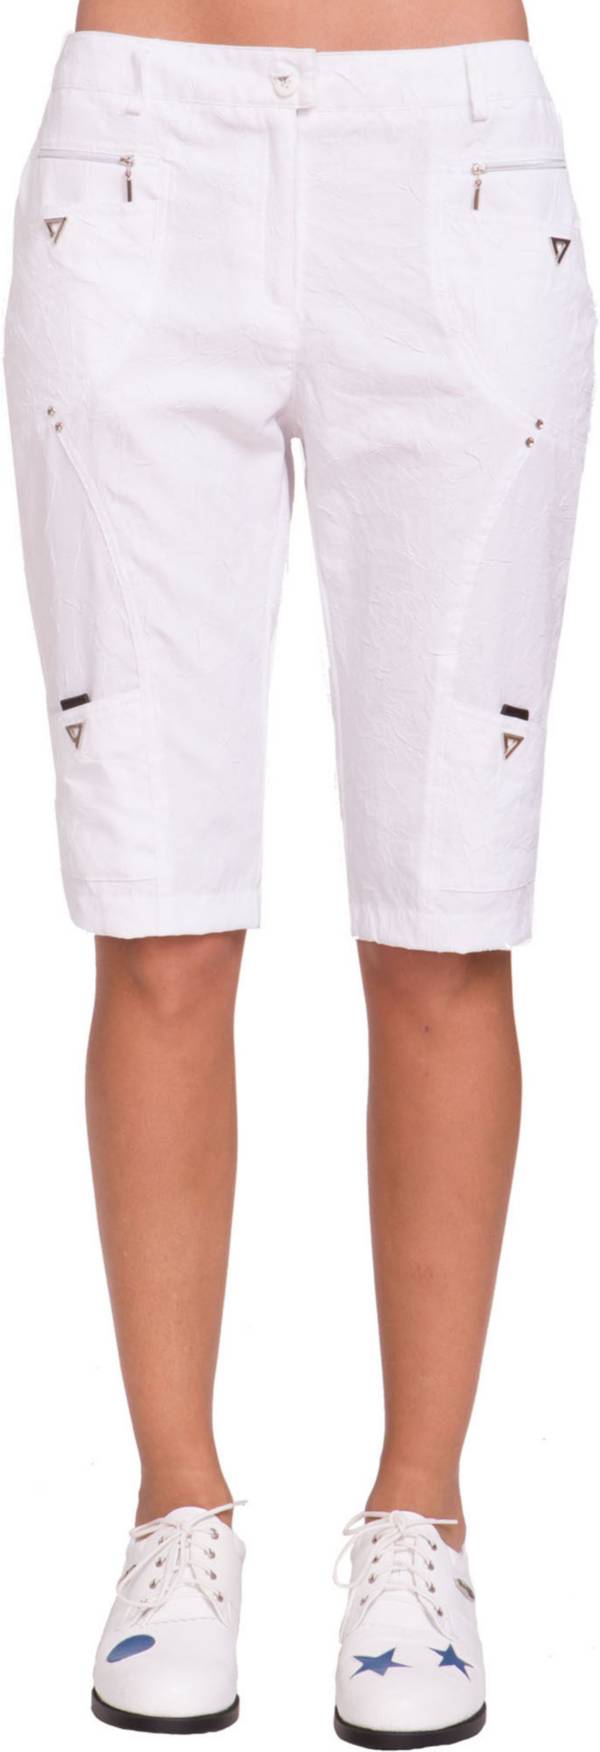 Jamie Sadock Women's Crunch Texture Knee Golf Capris product image